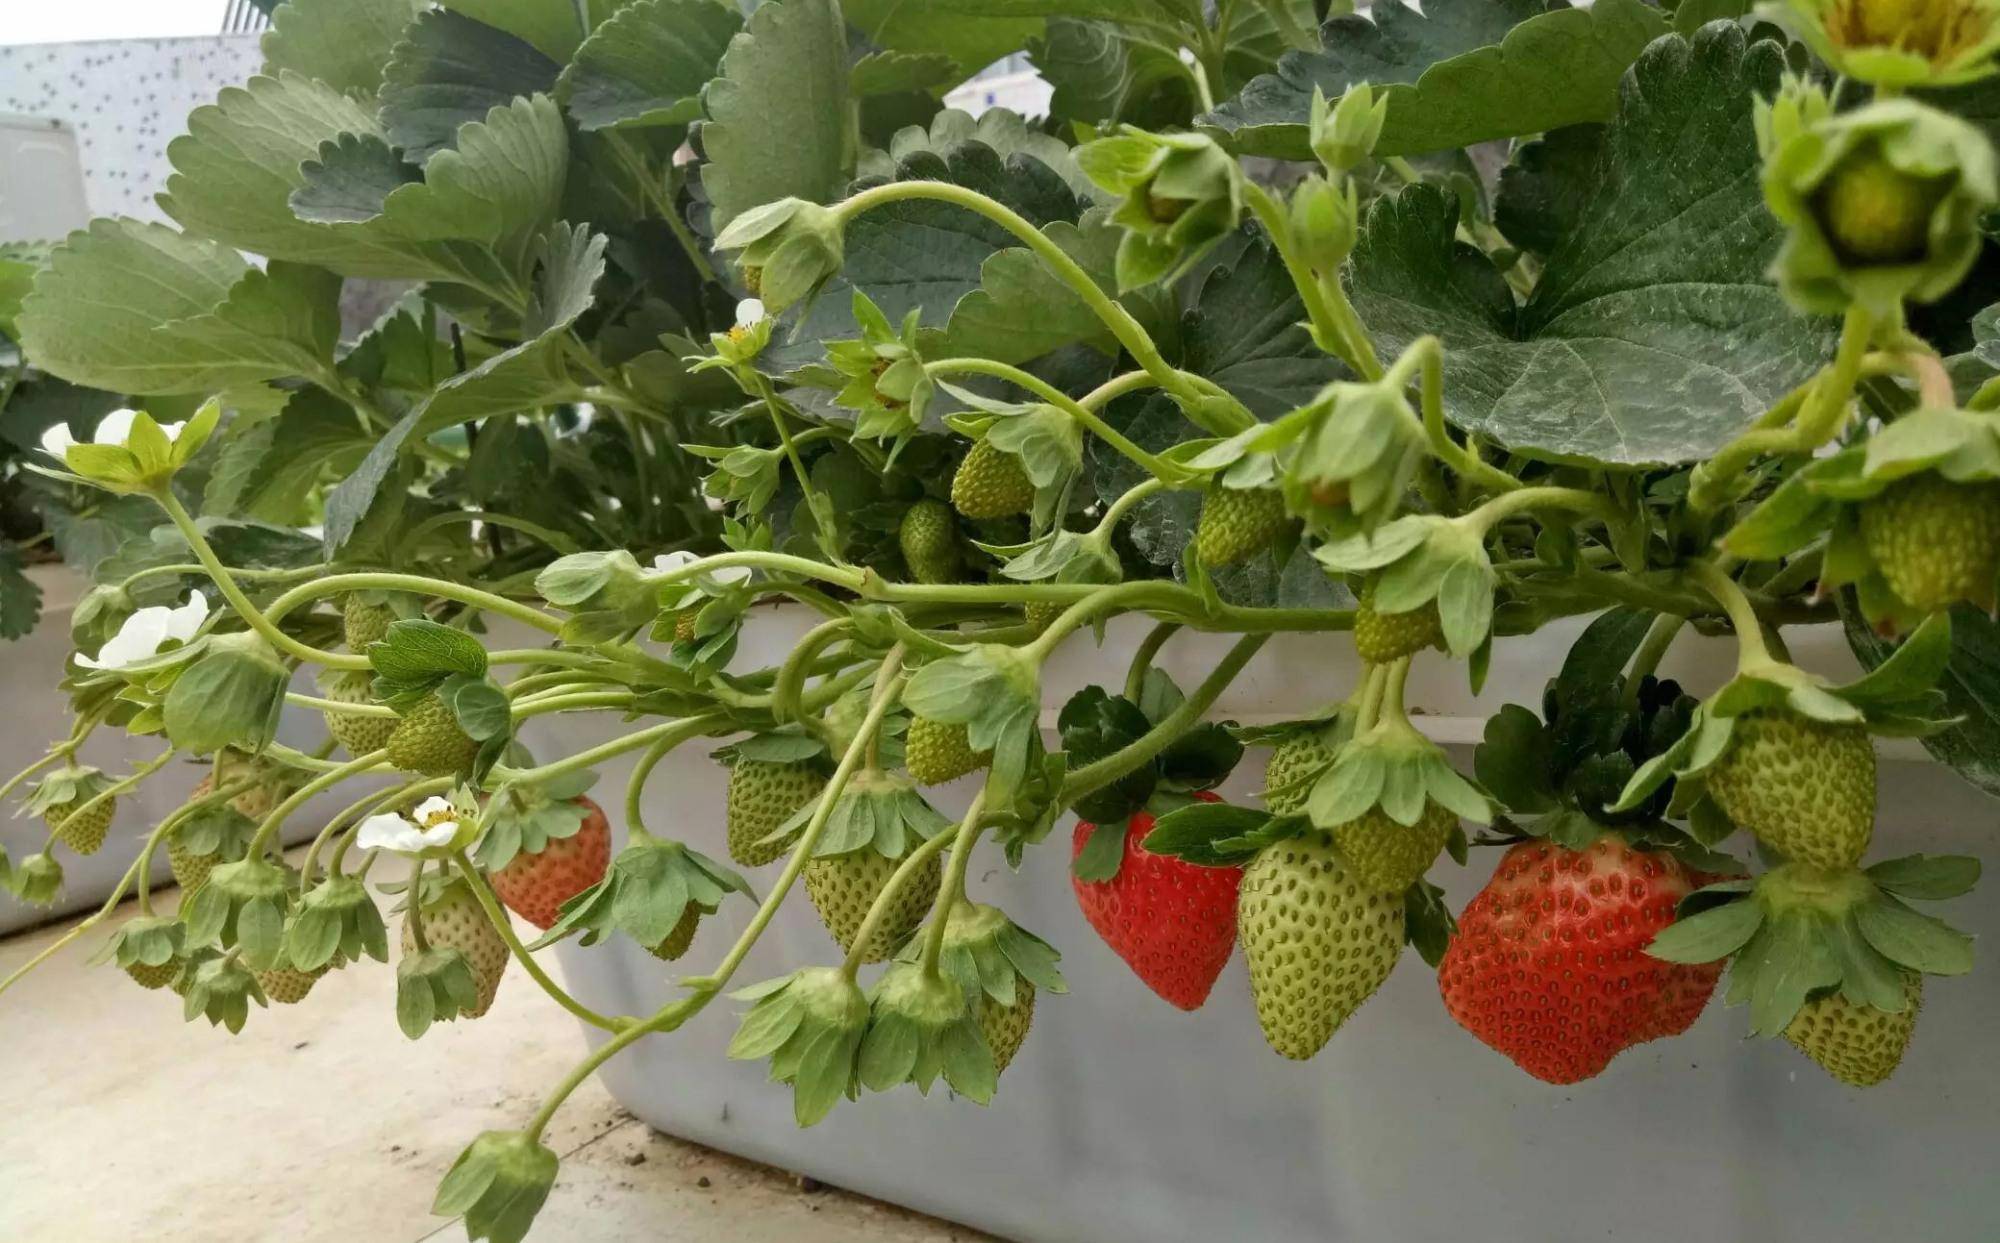 到了秋天气温下降之后,草莓苗就进入了生长旺盛期,能开始长得一天比